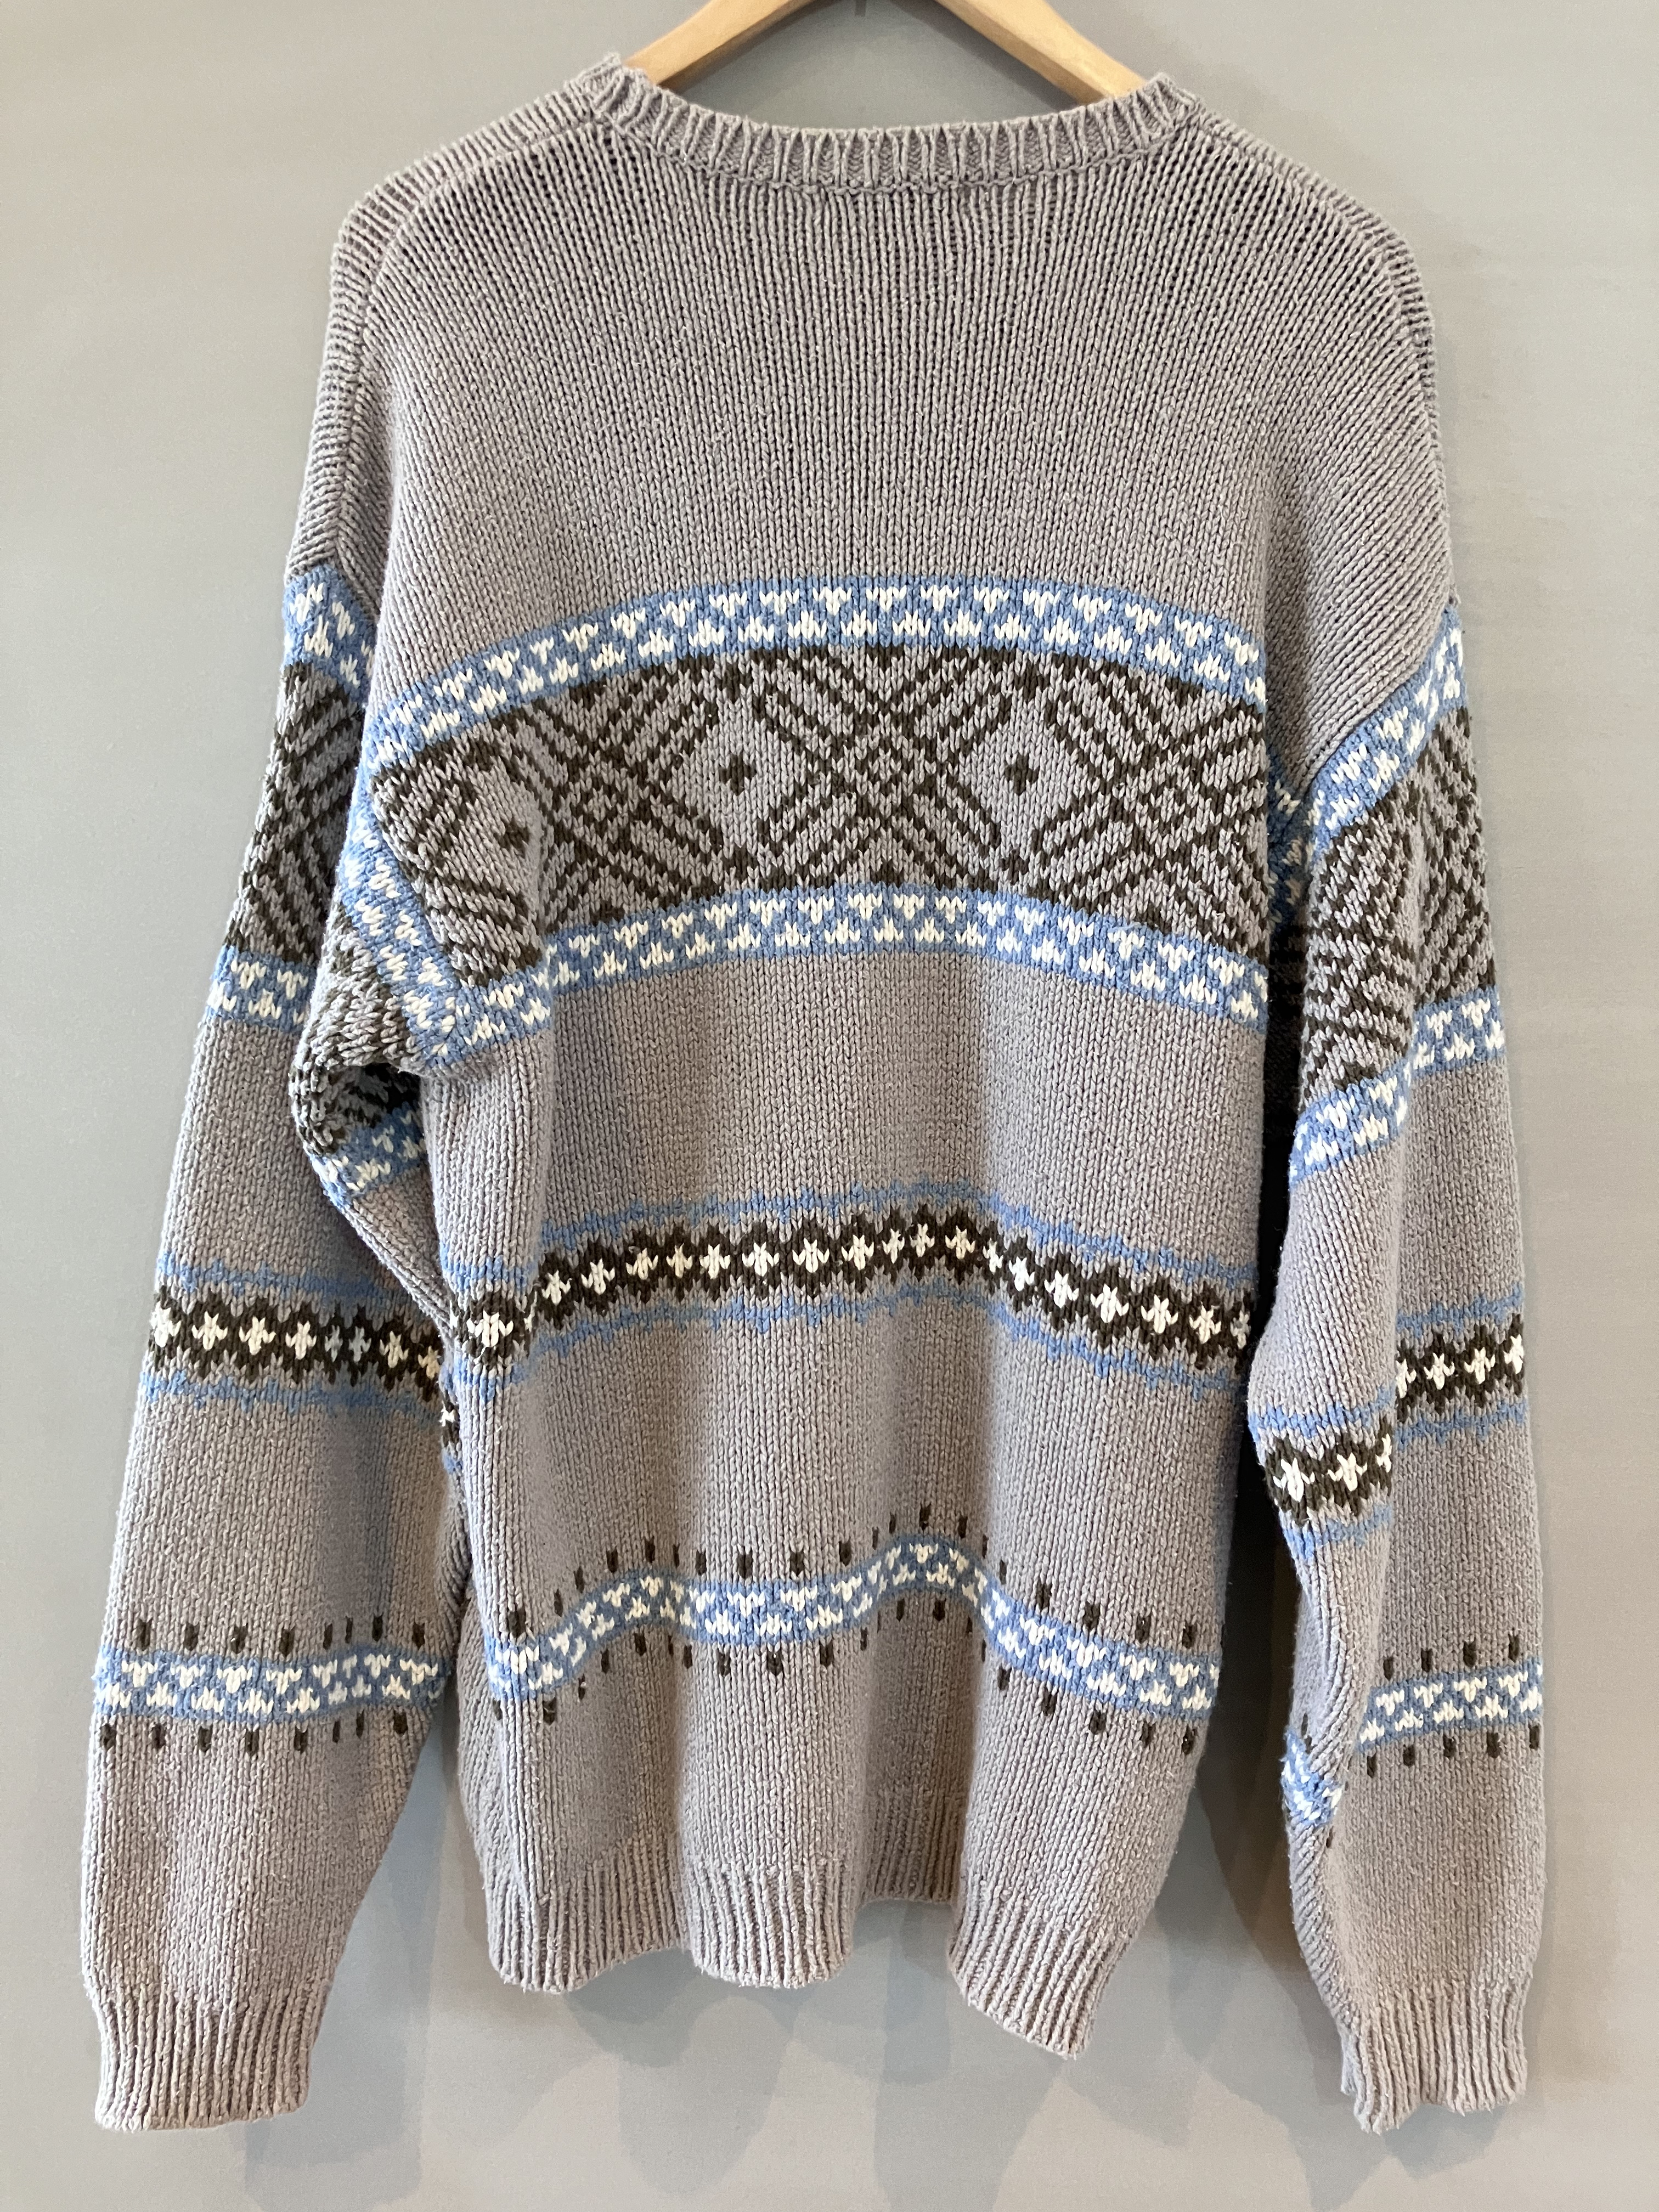 NAUTICA ノーティカ コットンニット セーター sweater ウールブレンド